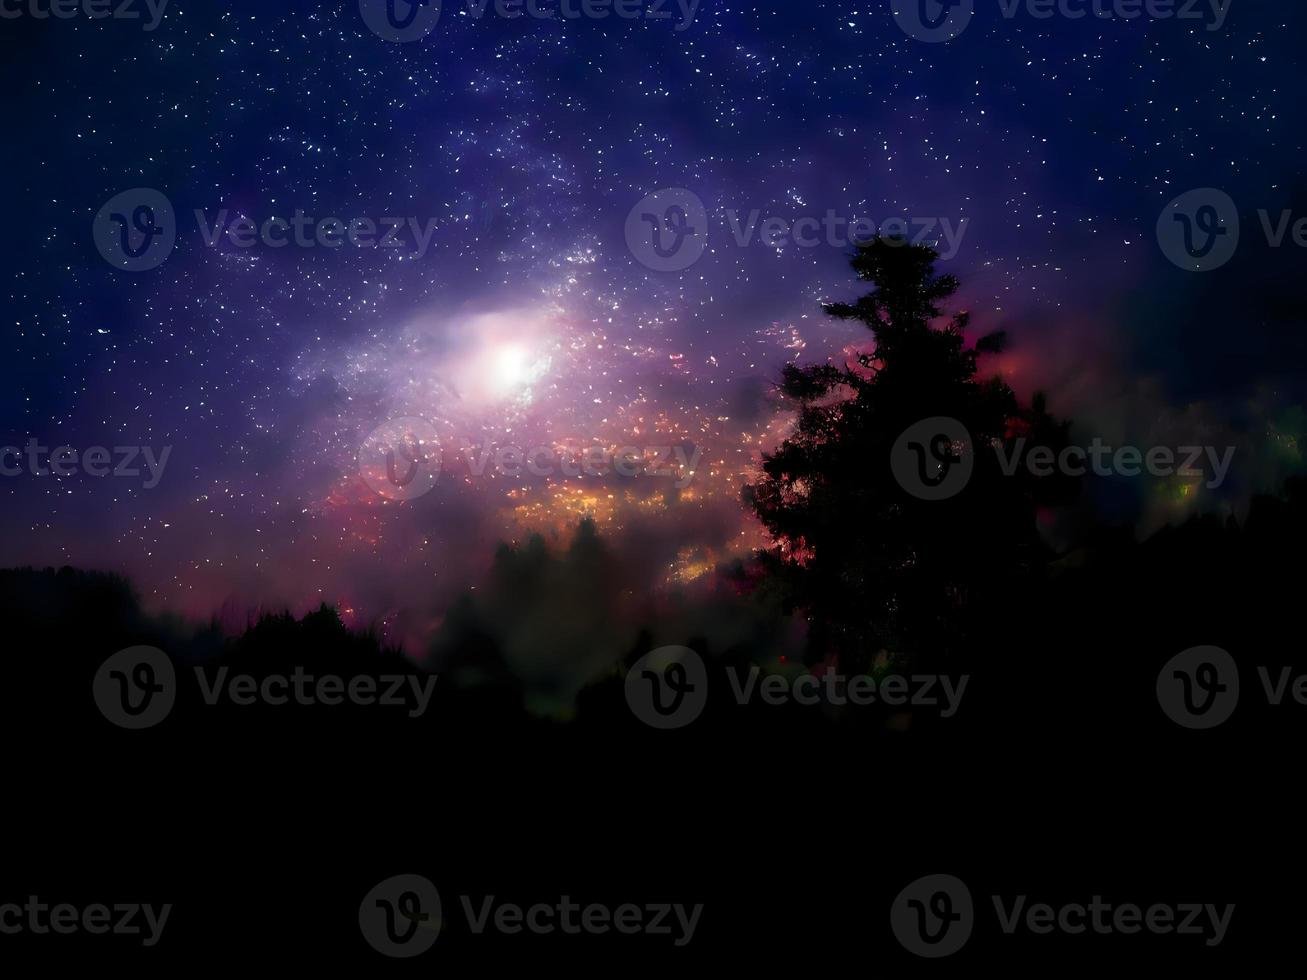 montanha paisagem noturna e fundo de galáxia via láctea, longa exposição, pouca luz foto